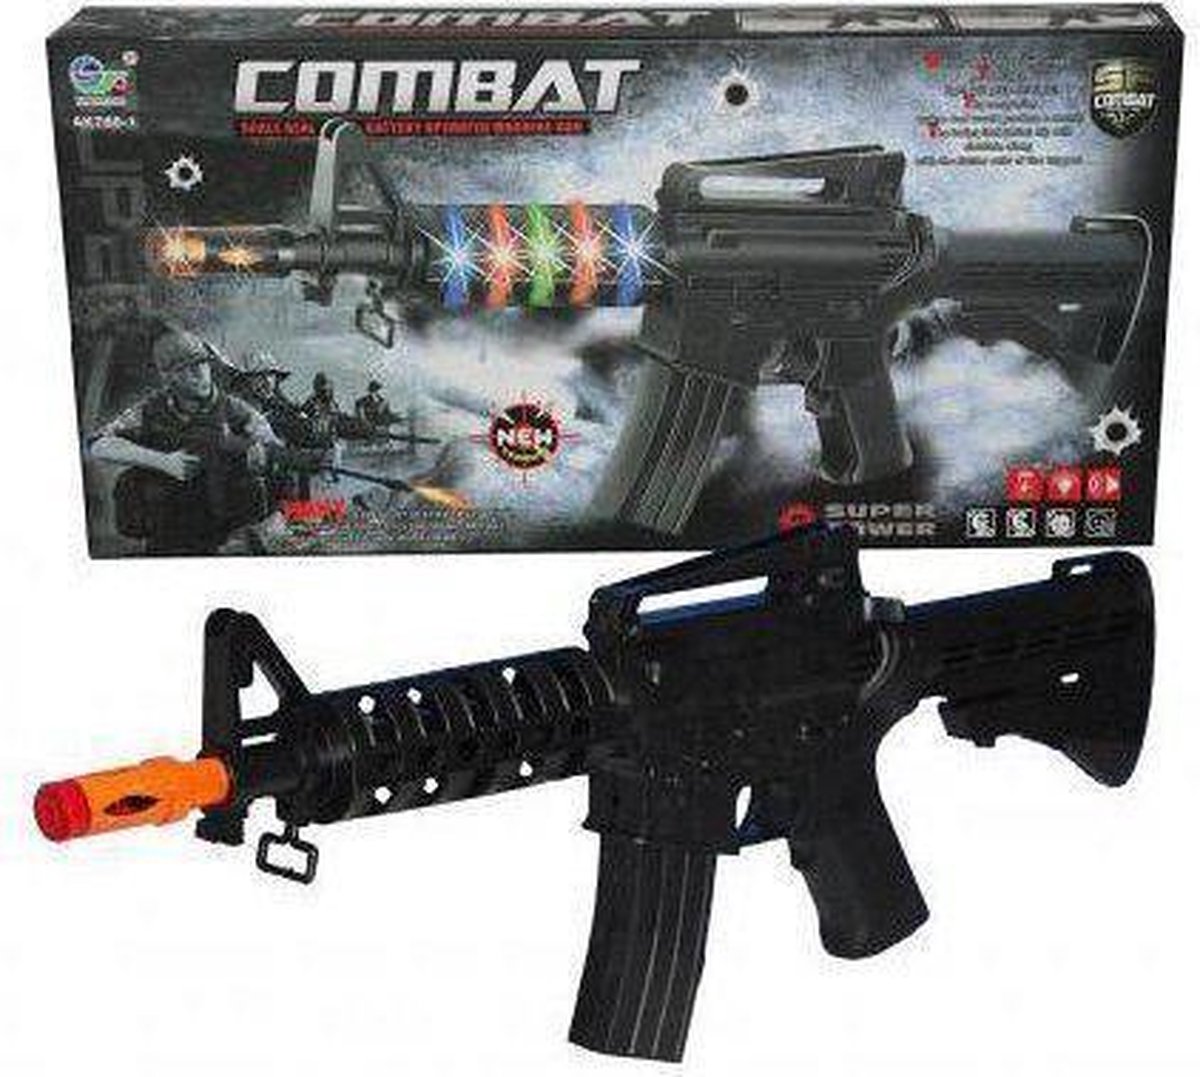 Combat speelgoed geweer met licht en geluid | bol.com